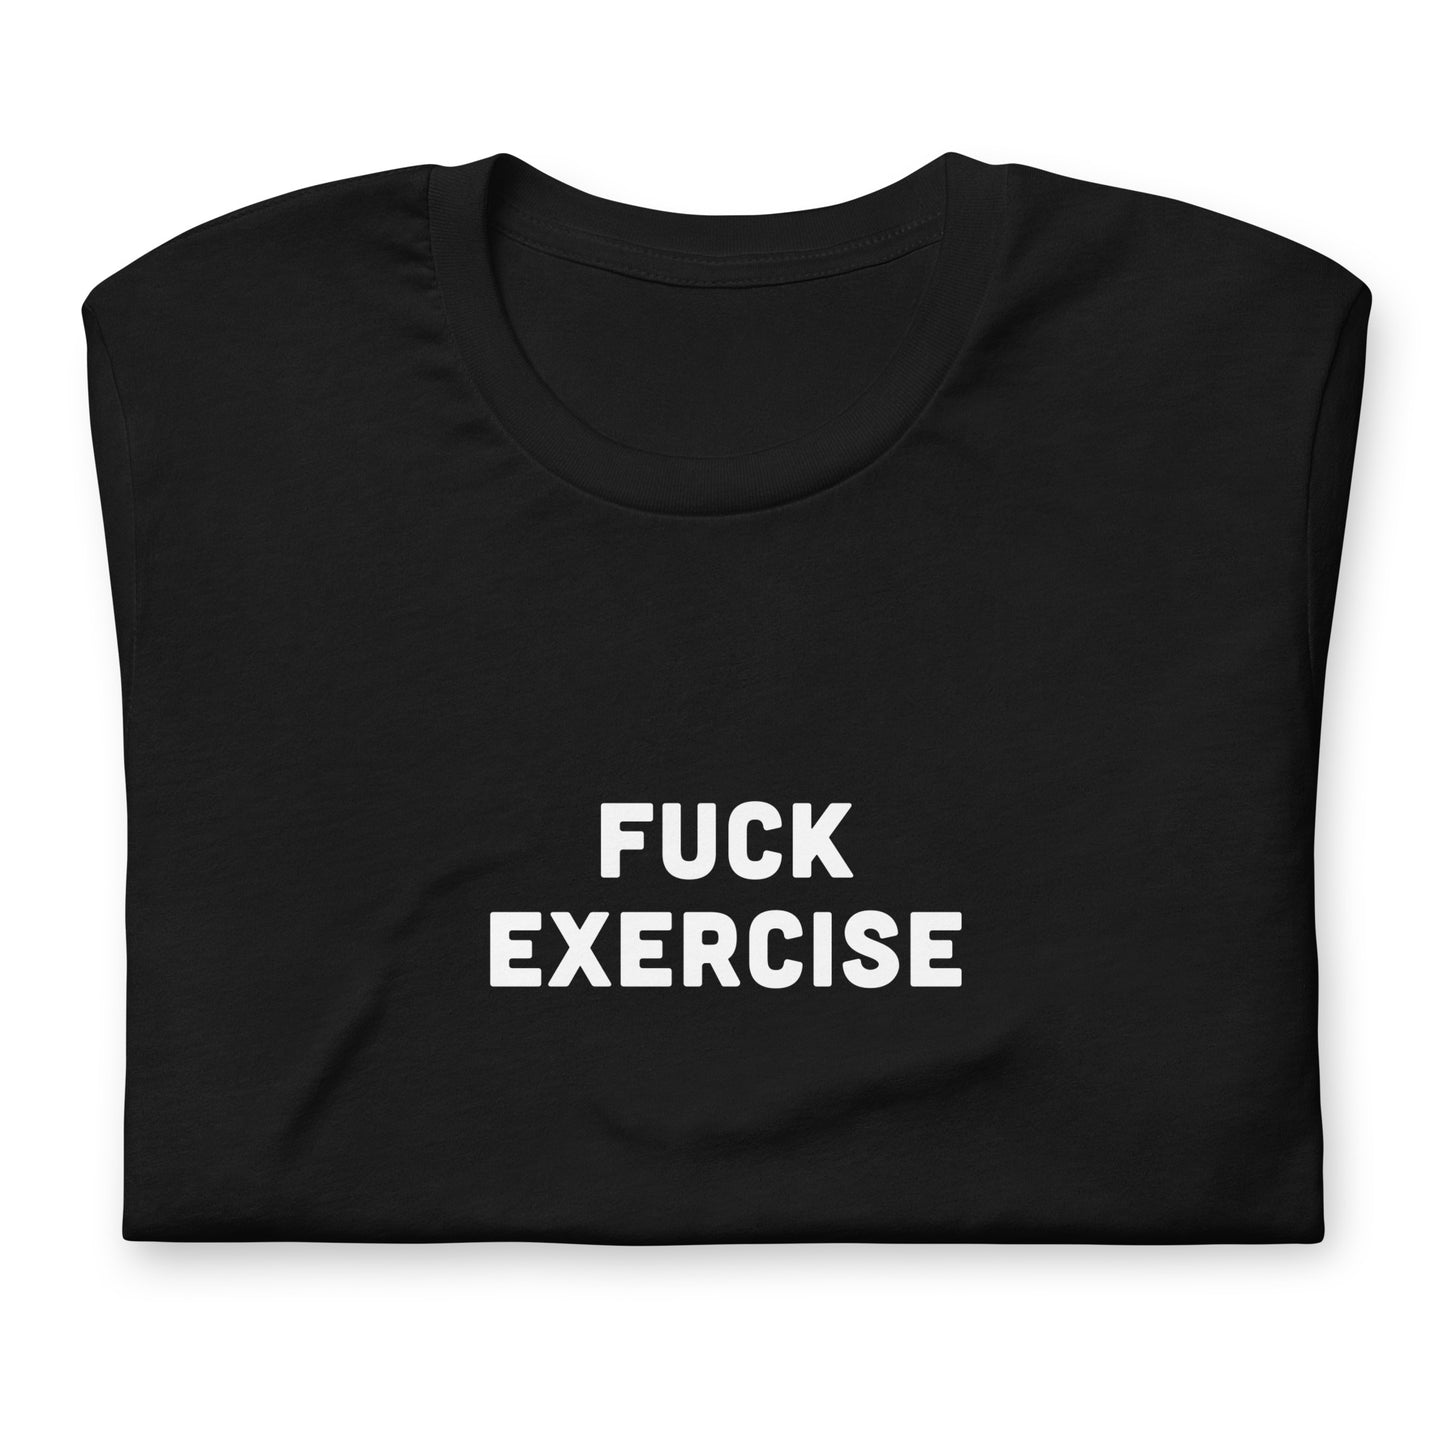 Fuck Exercise T-Shirt Size M Color Black